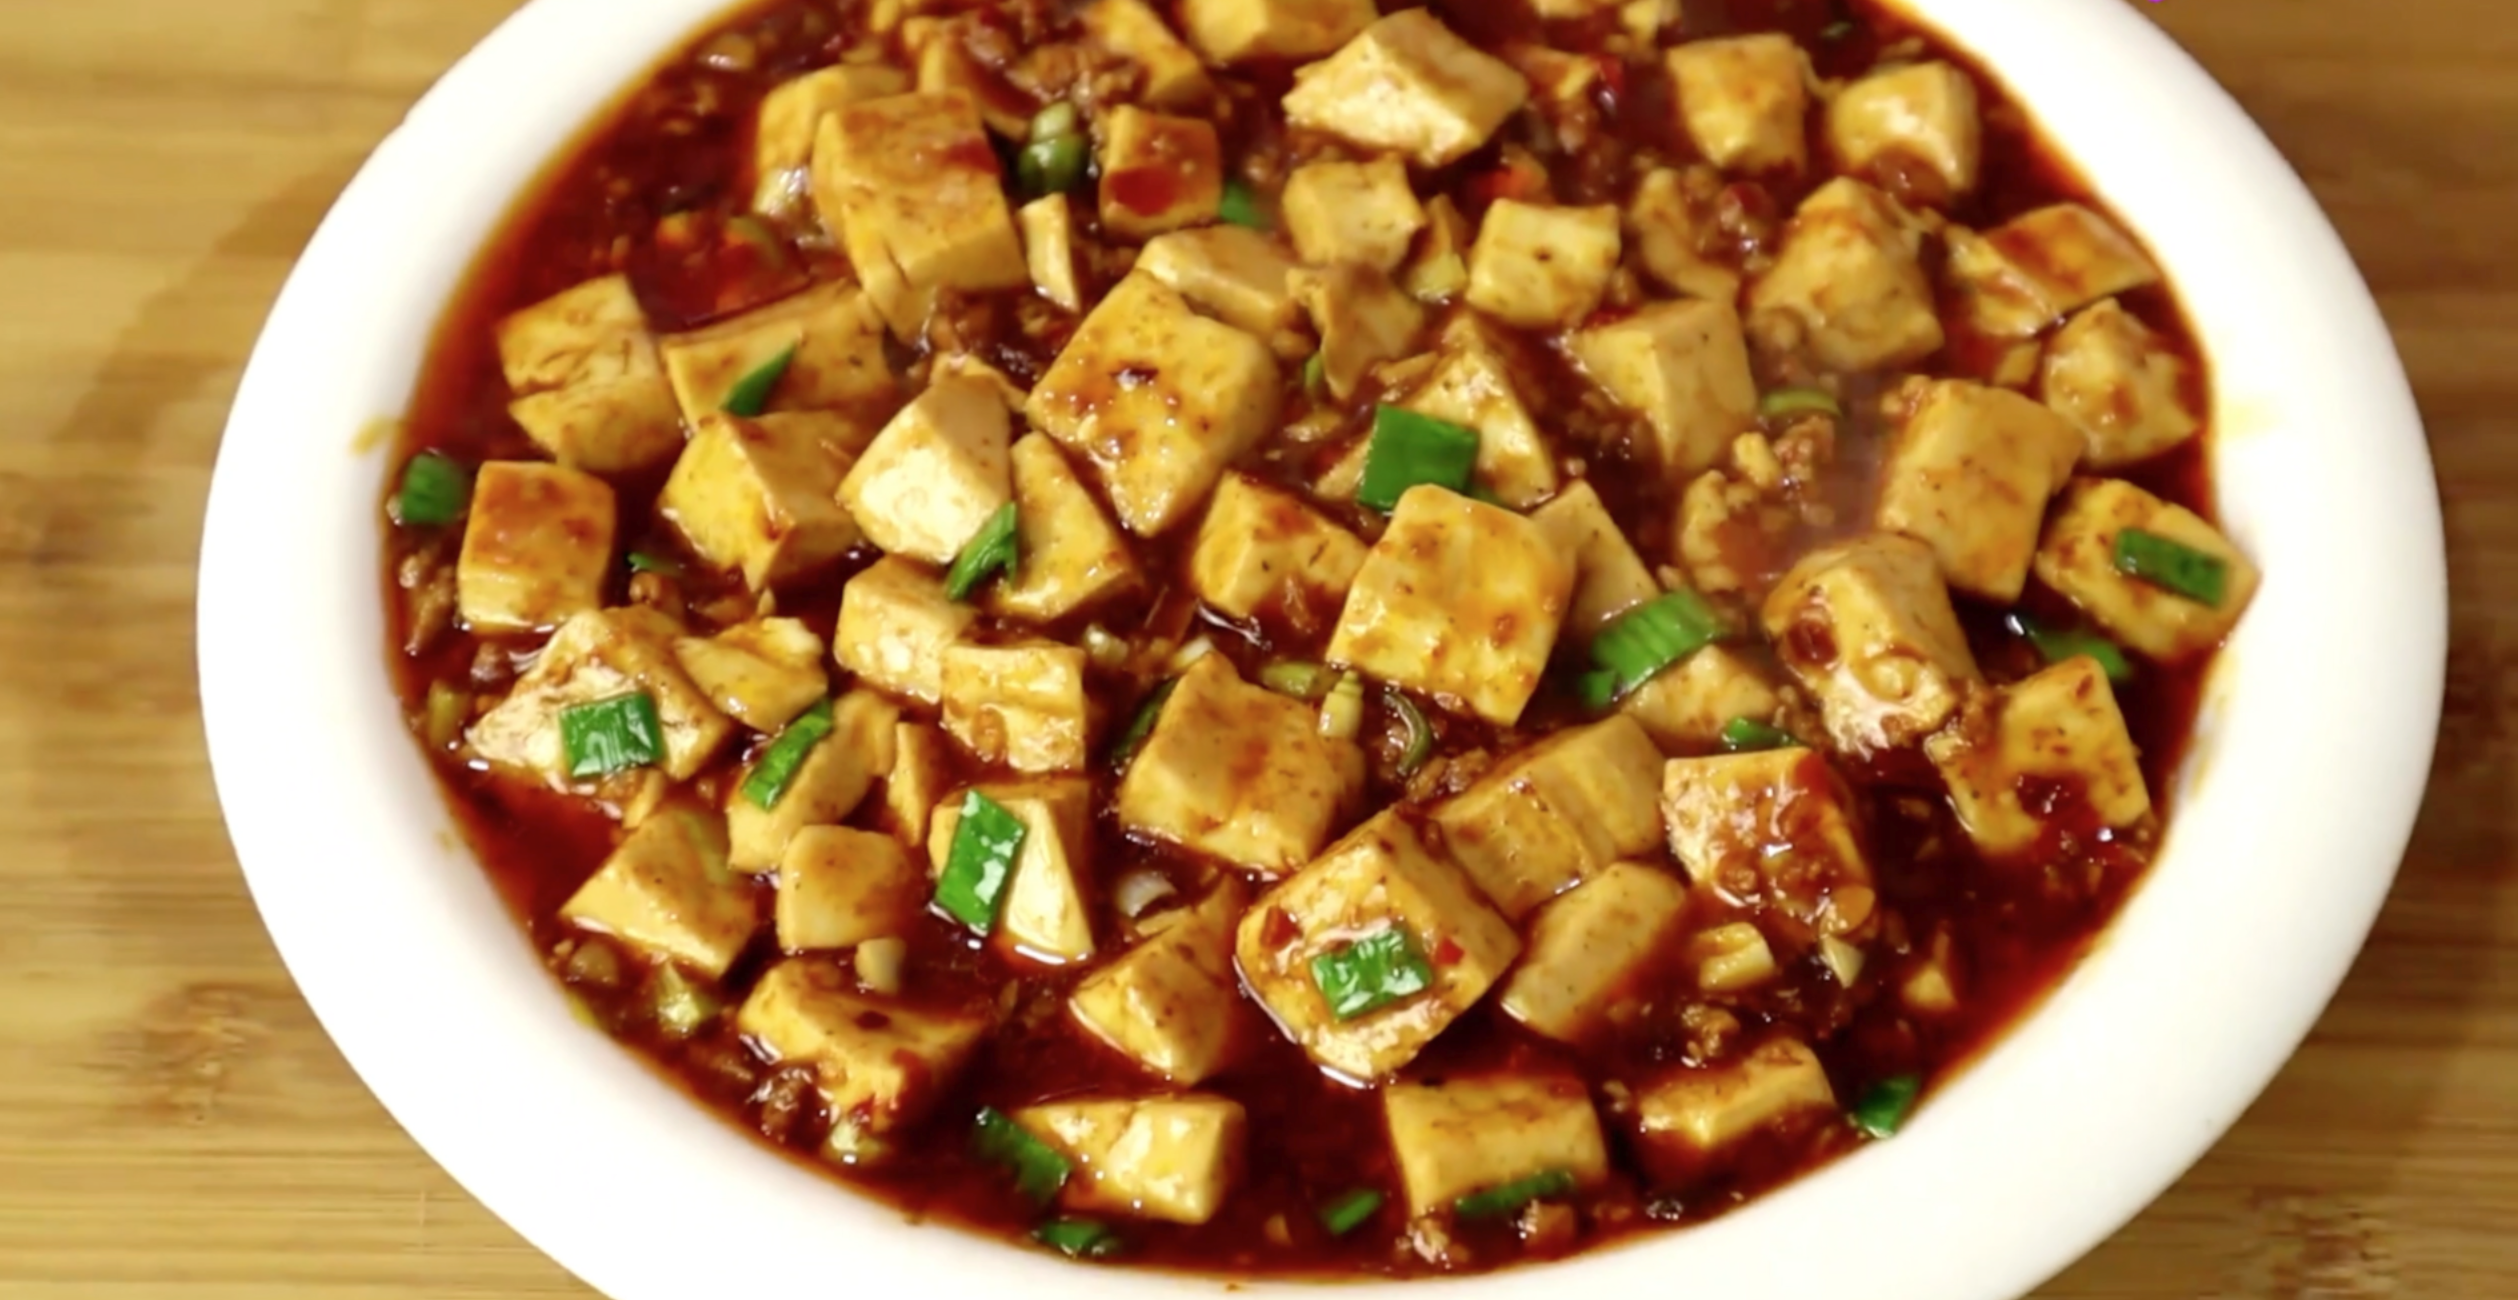 正宗麻婆豆腐这么简单大厨教几个技巧豆腐入味连汤汁都能泡饭